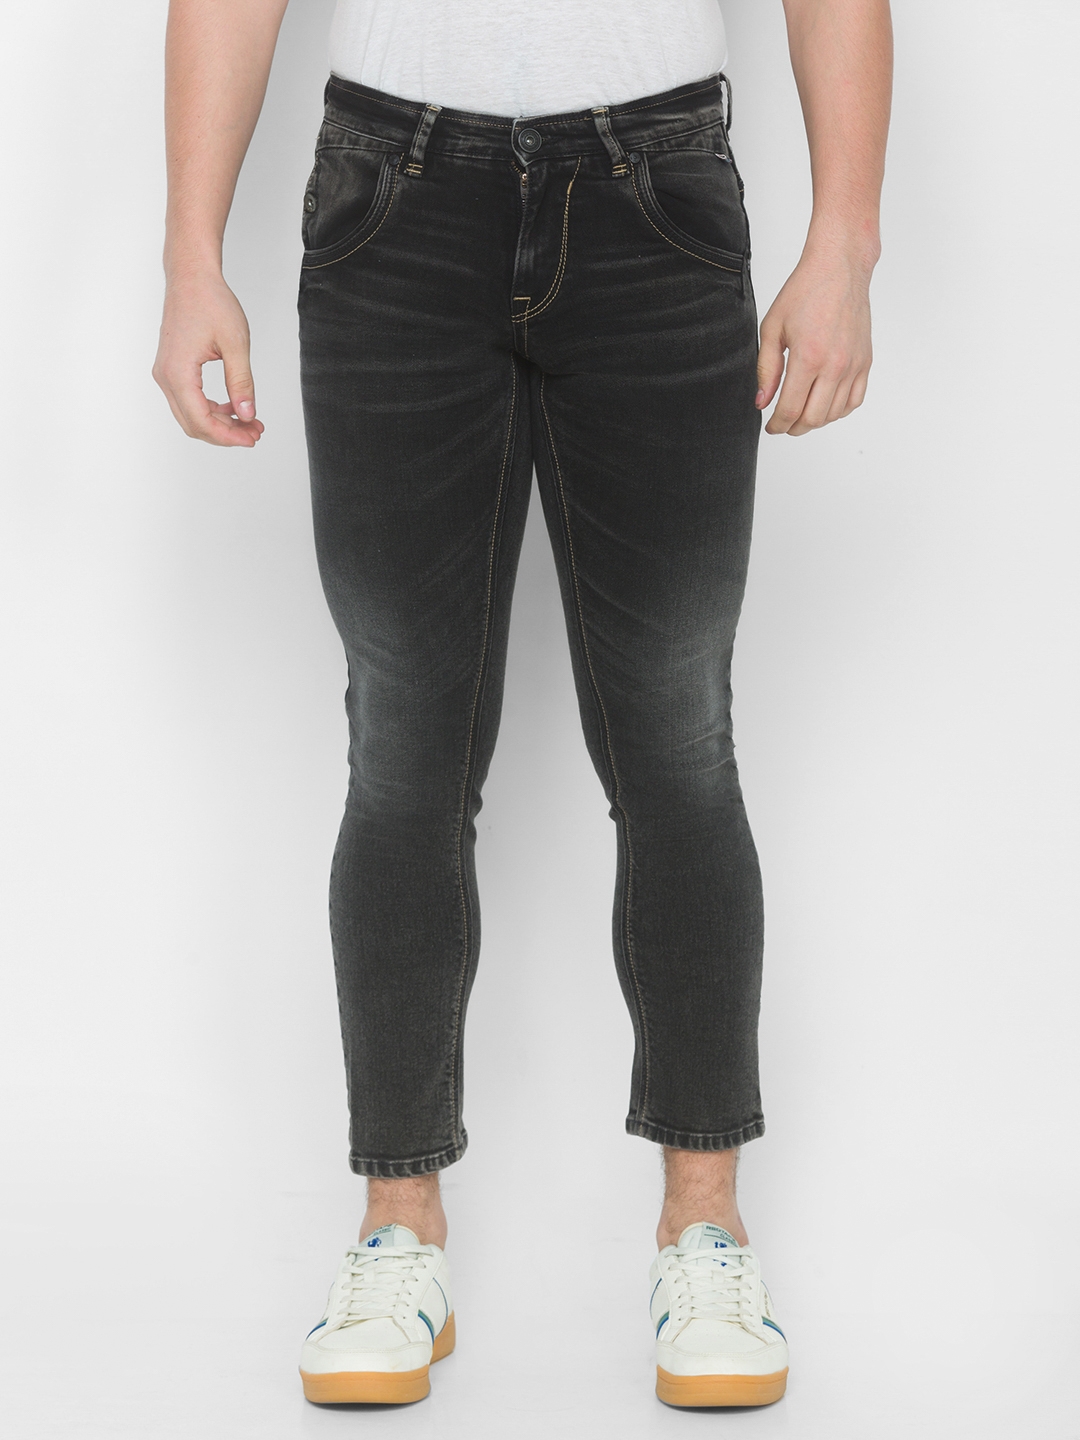 Men's Black Cotton Solid Slim Jeans